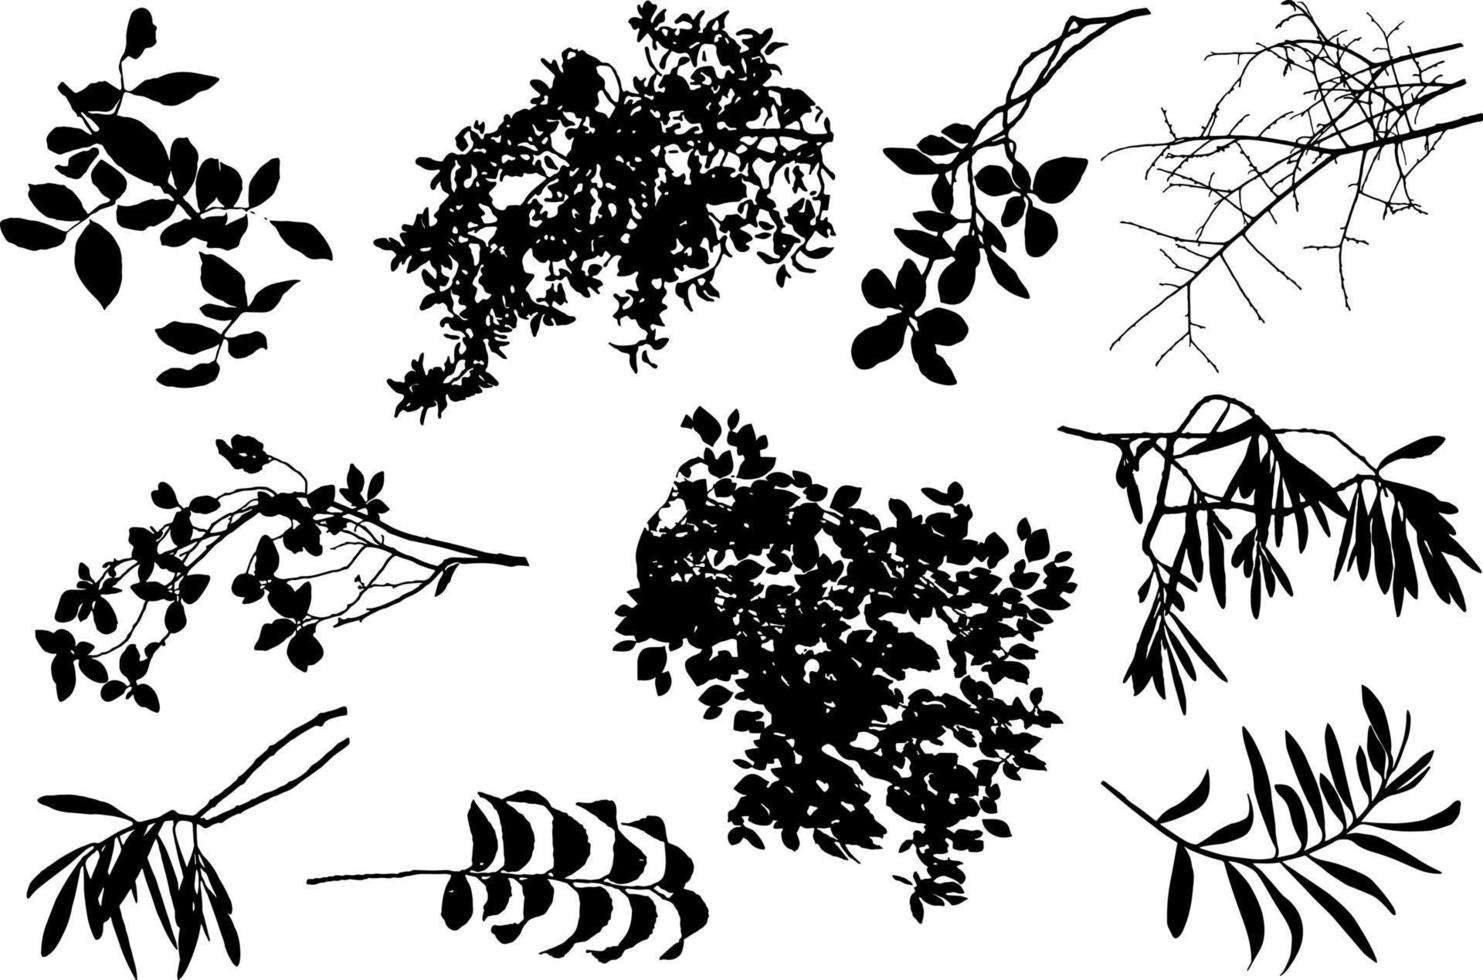 zwart-wit silhouet van bladeren, takken en bloemen. vector